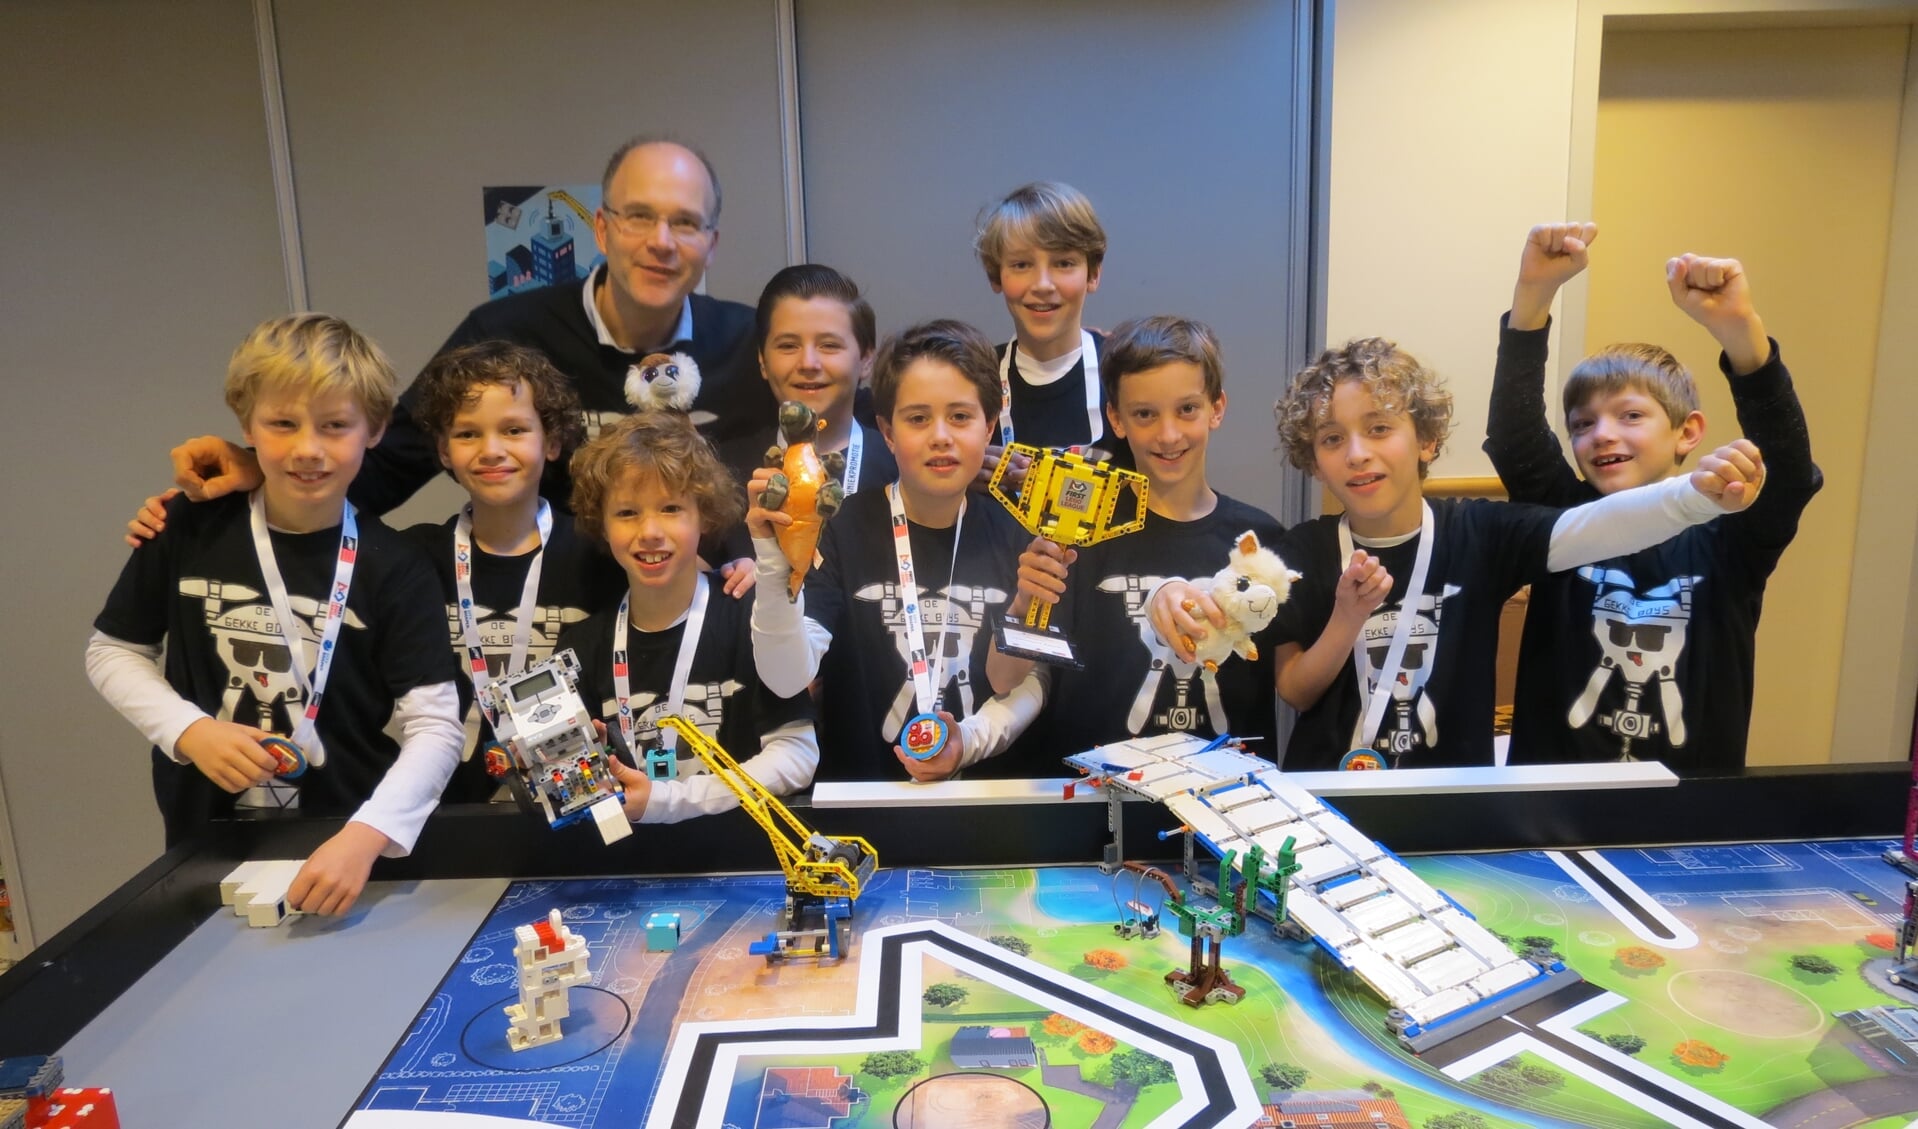 De opgetogen winnaars van de regionale Lego League 2019-2020.